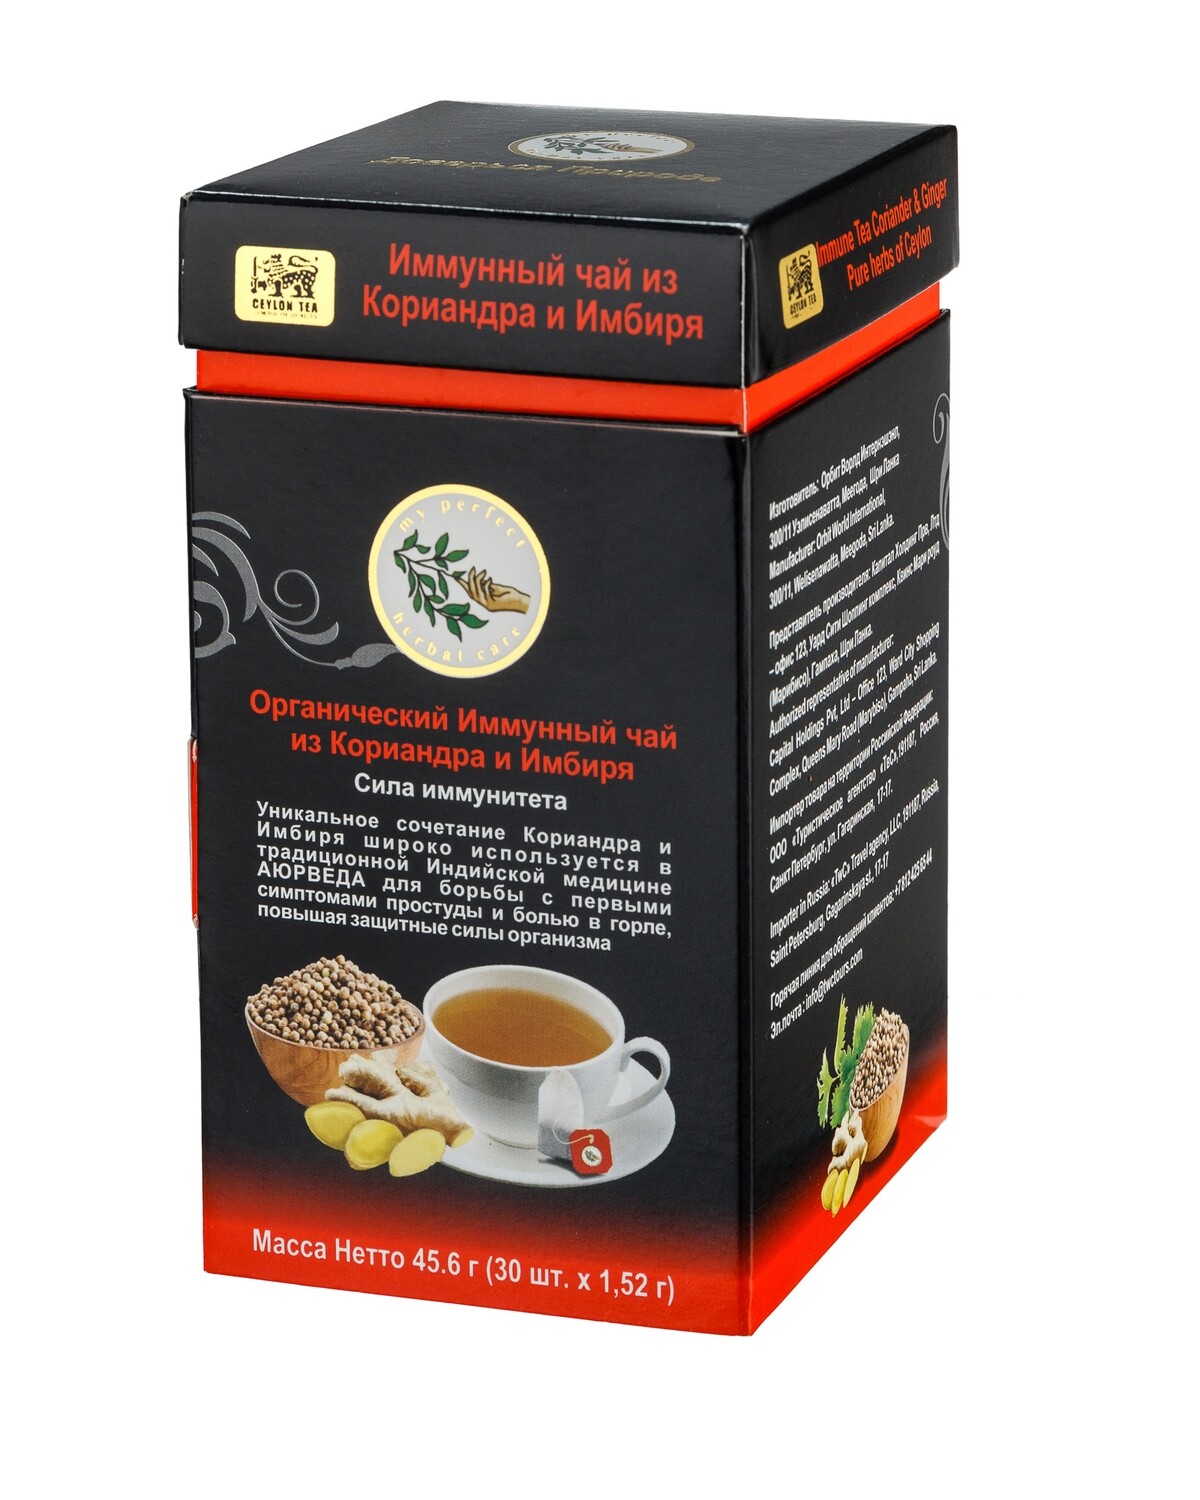 Органический Иммунный чай из Кориандра и Имбиря, My perfect herbal care, 45,6 г